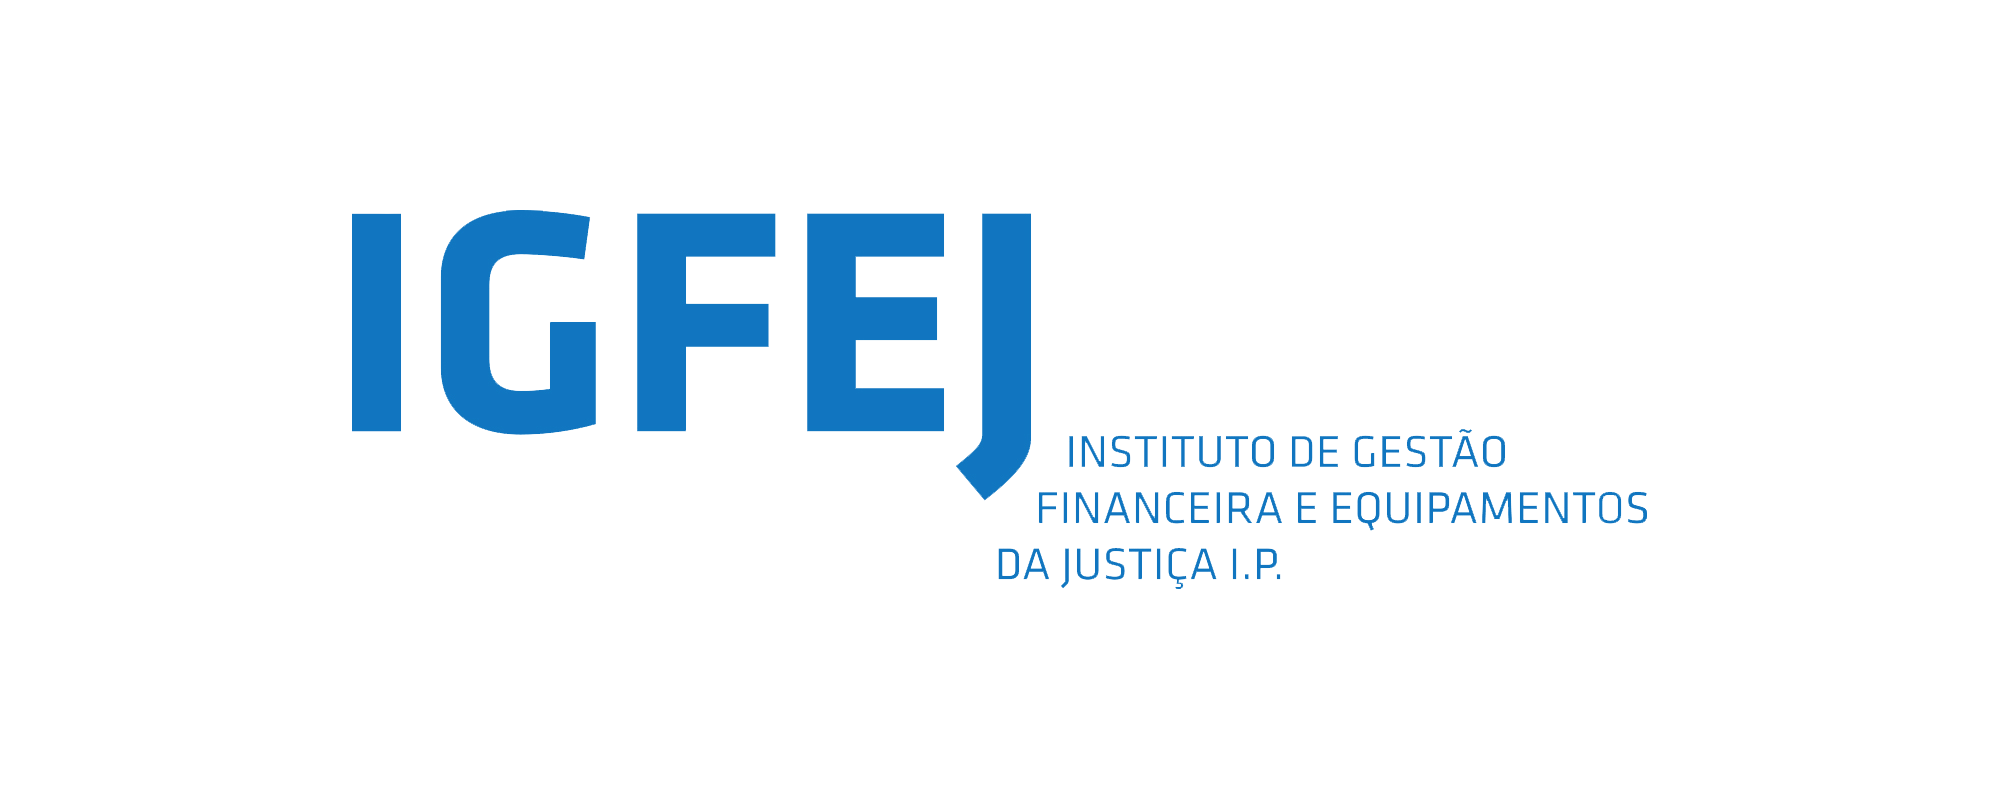 Instituto de gestão financeira e equipamentos da justiça